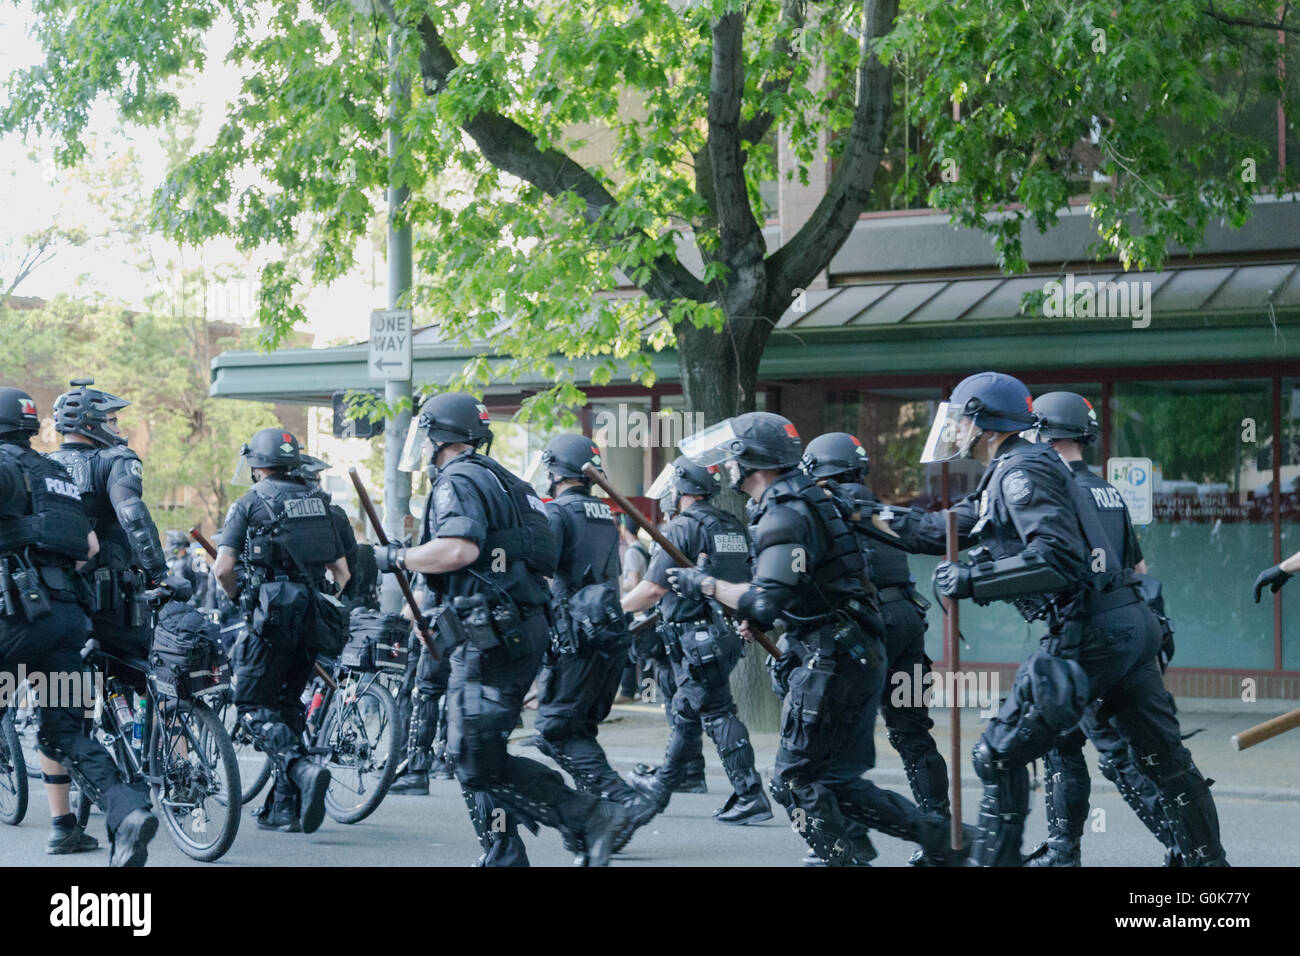 Seattle, WA, Stati Uniti d'America. Il 1 maggio, 2016. Gli ufficiali di polizia carica improvvisamente aggressivo verso un gruppo di manifestanti e reindirizzare un percorso marching. Foto Stock